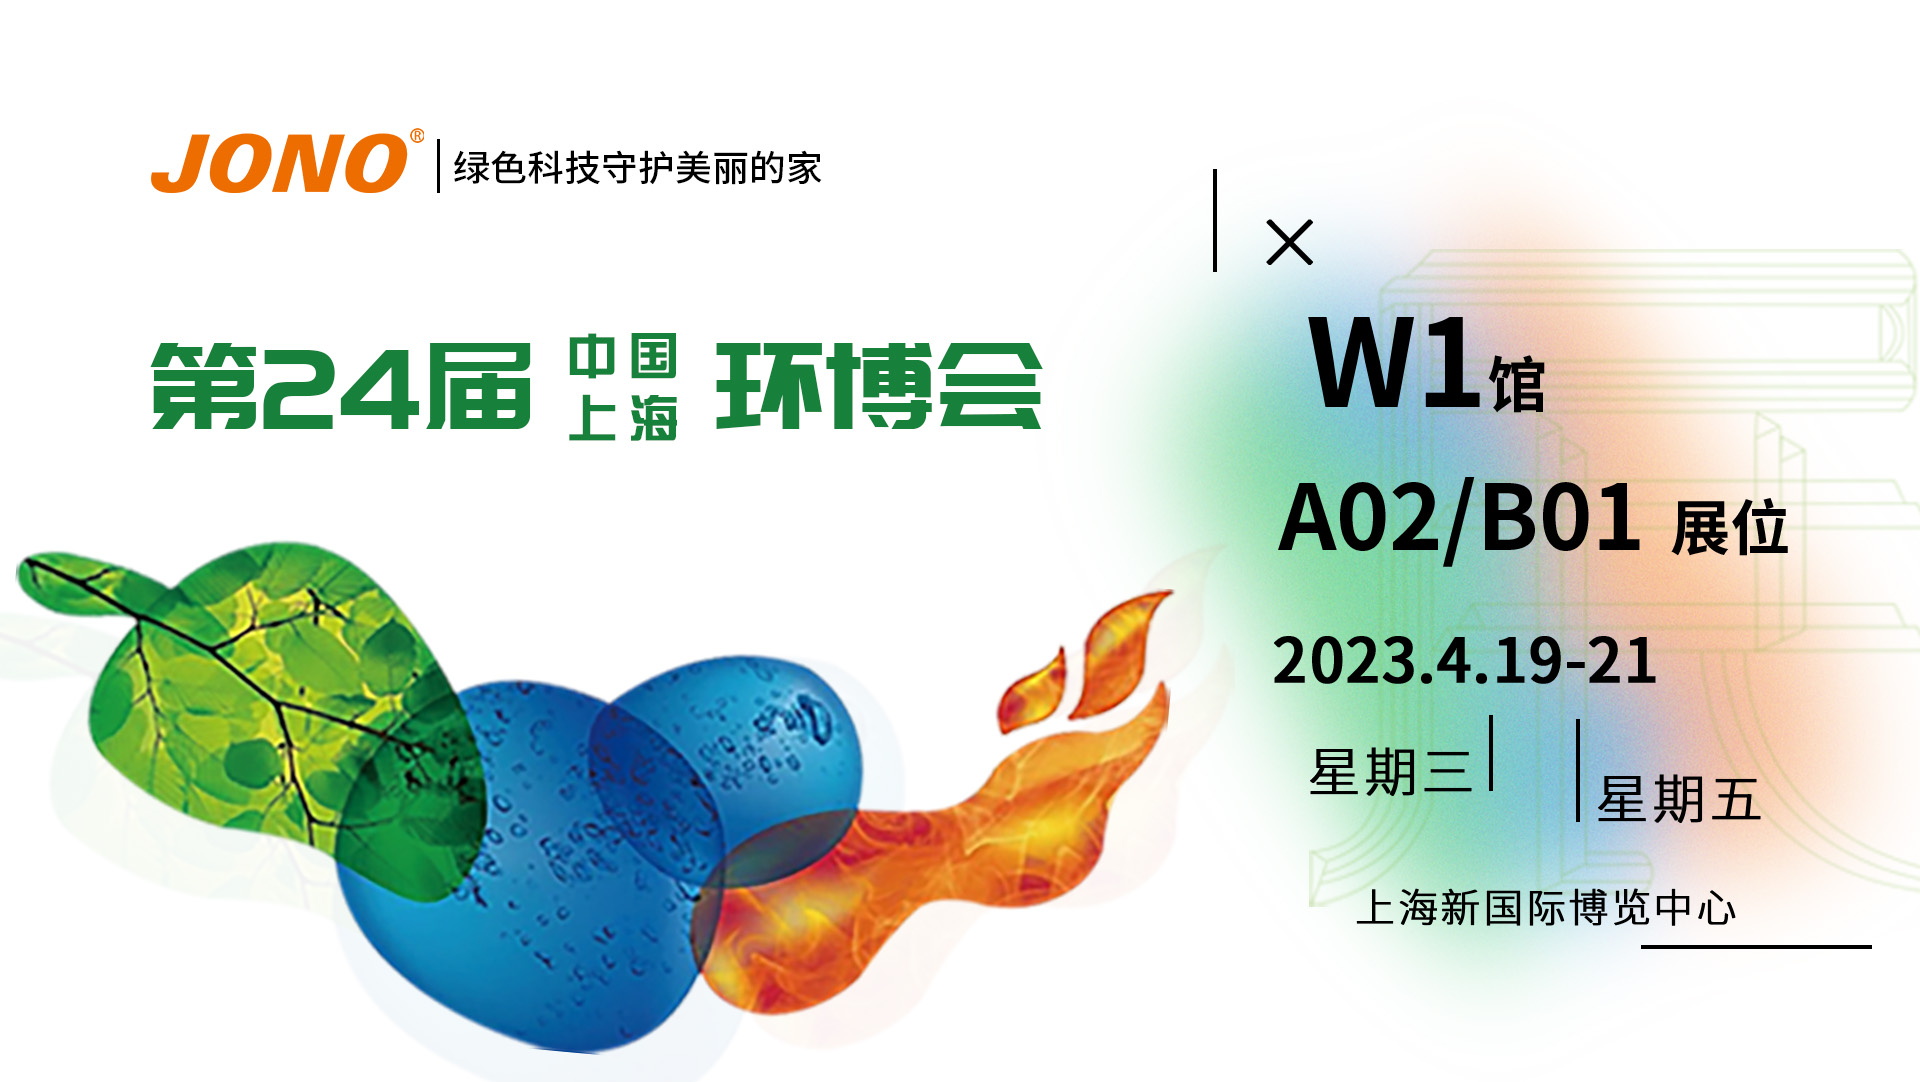 嘉诺科技与您相约第24届中国环博会